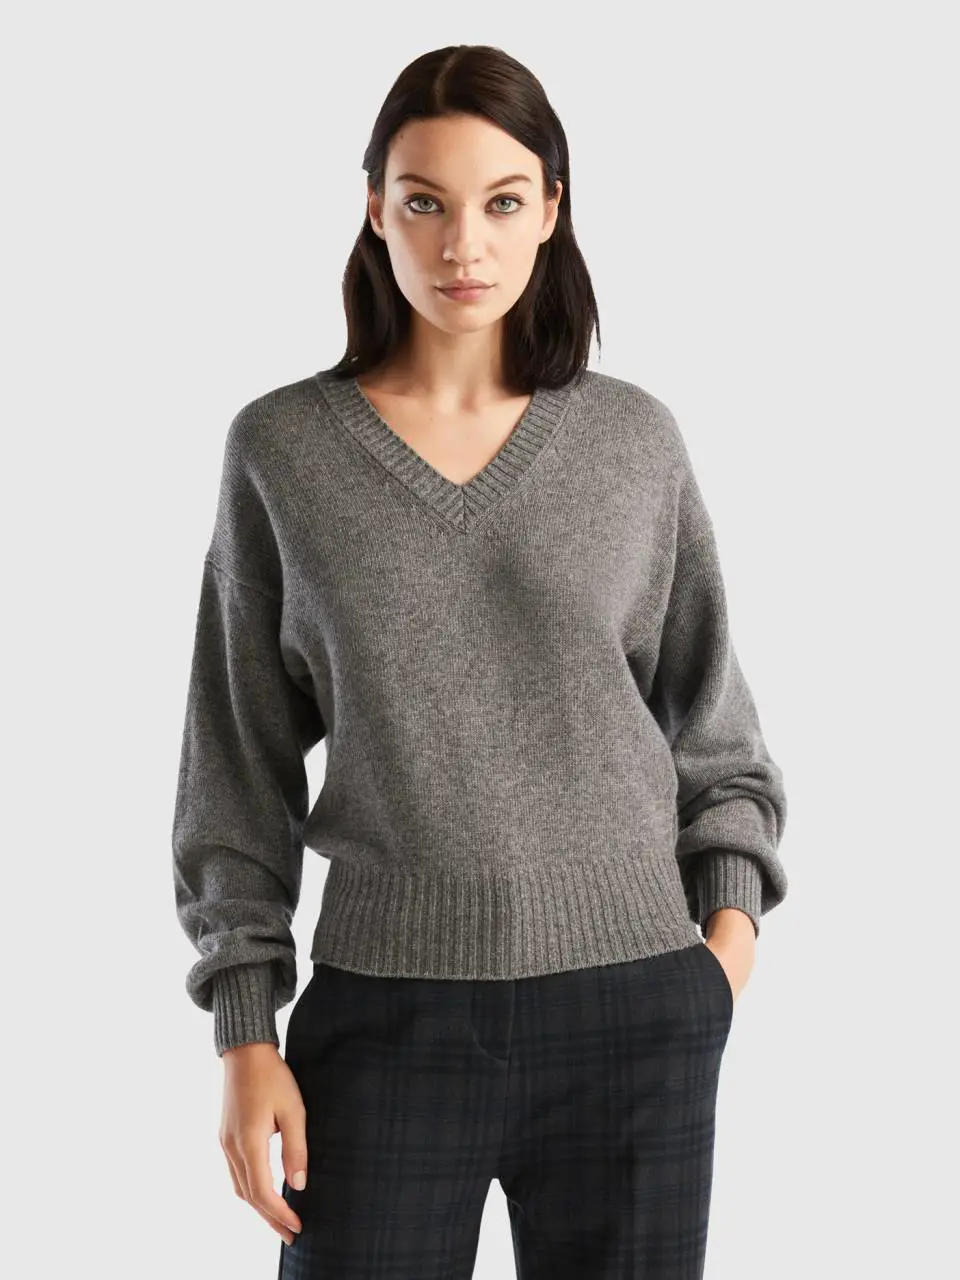 Benetton v-neck sweater in wool blend. 1